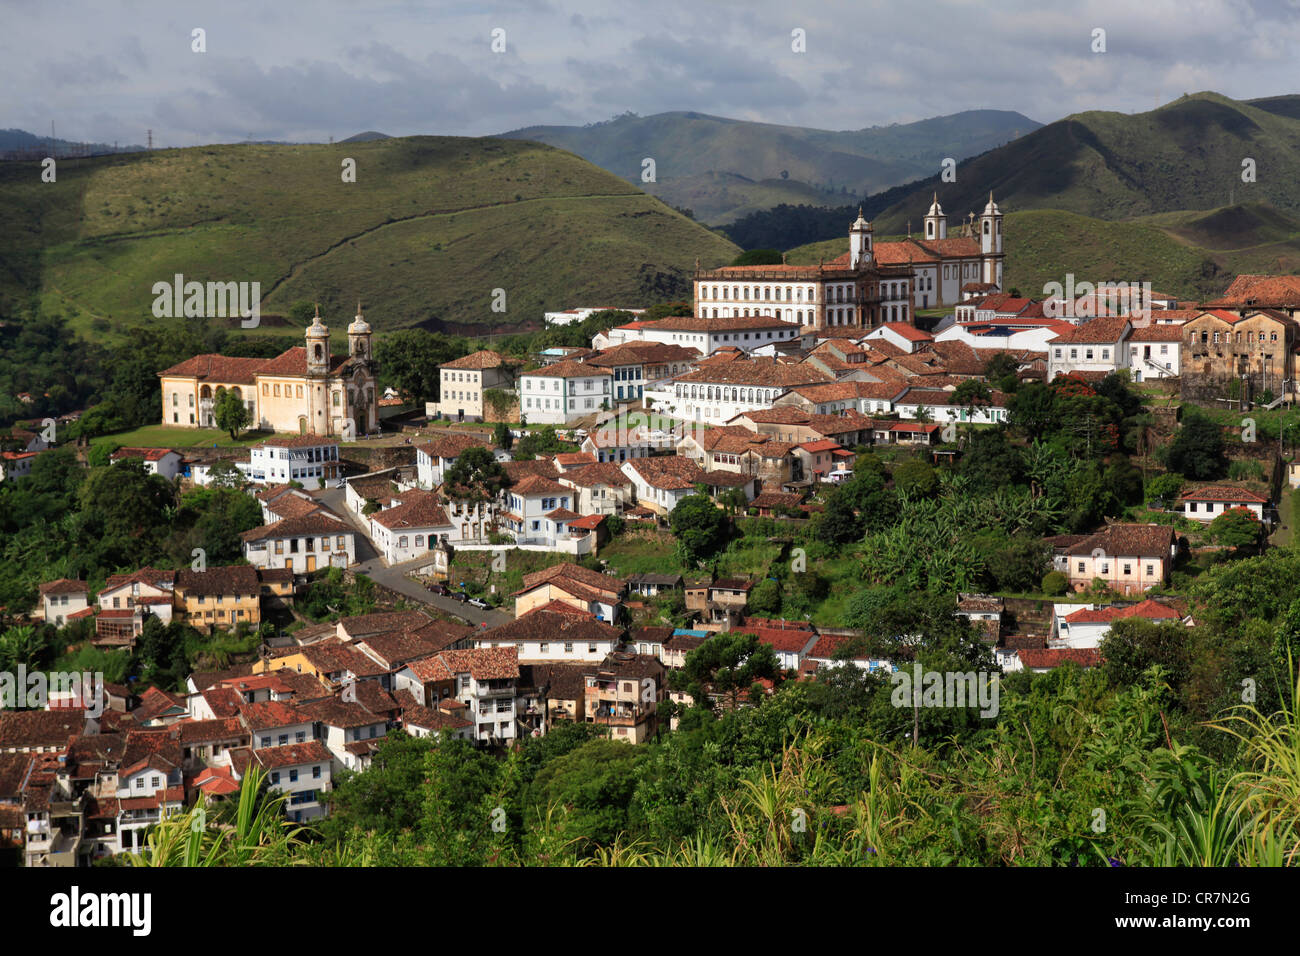 Brasil, Minas Gerais state, Ouro Preto Stock Photo